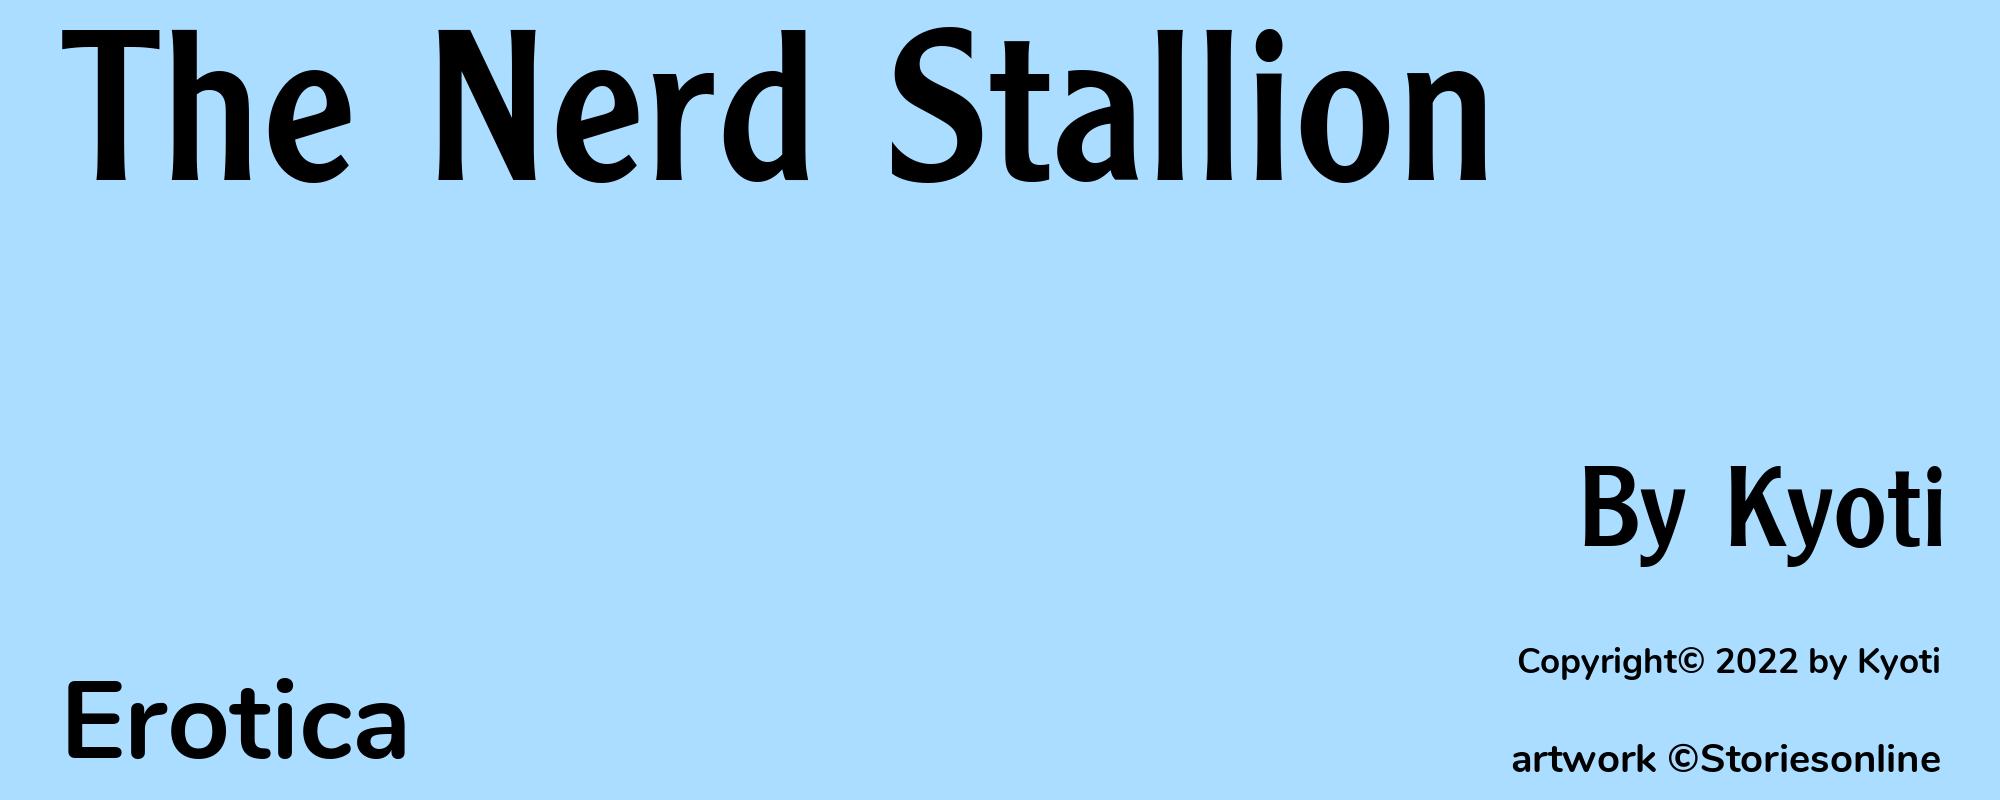 The Nerd Stallion - Cover